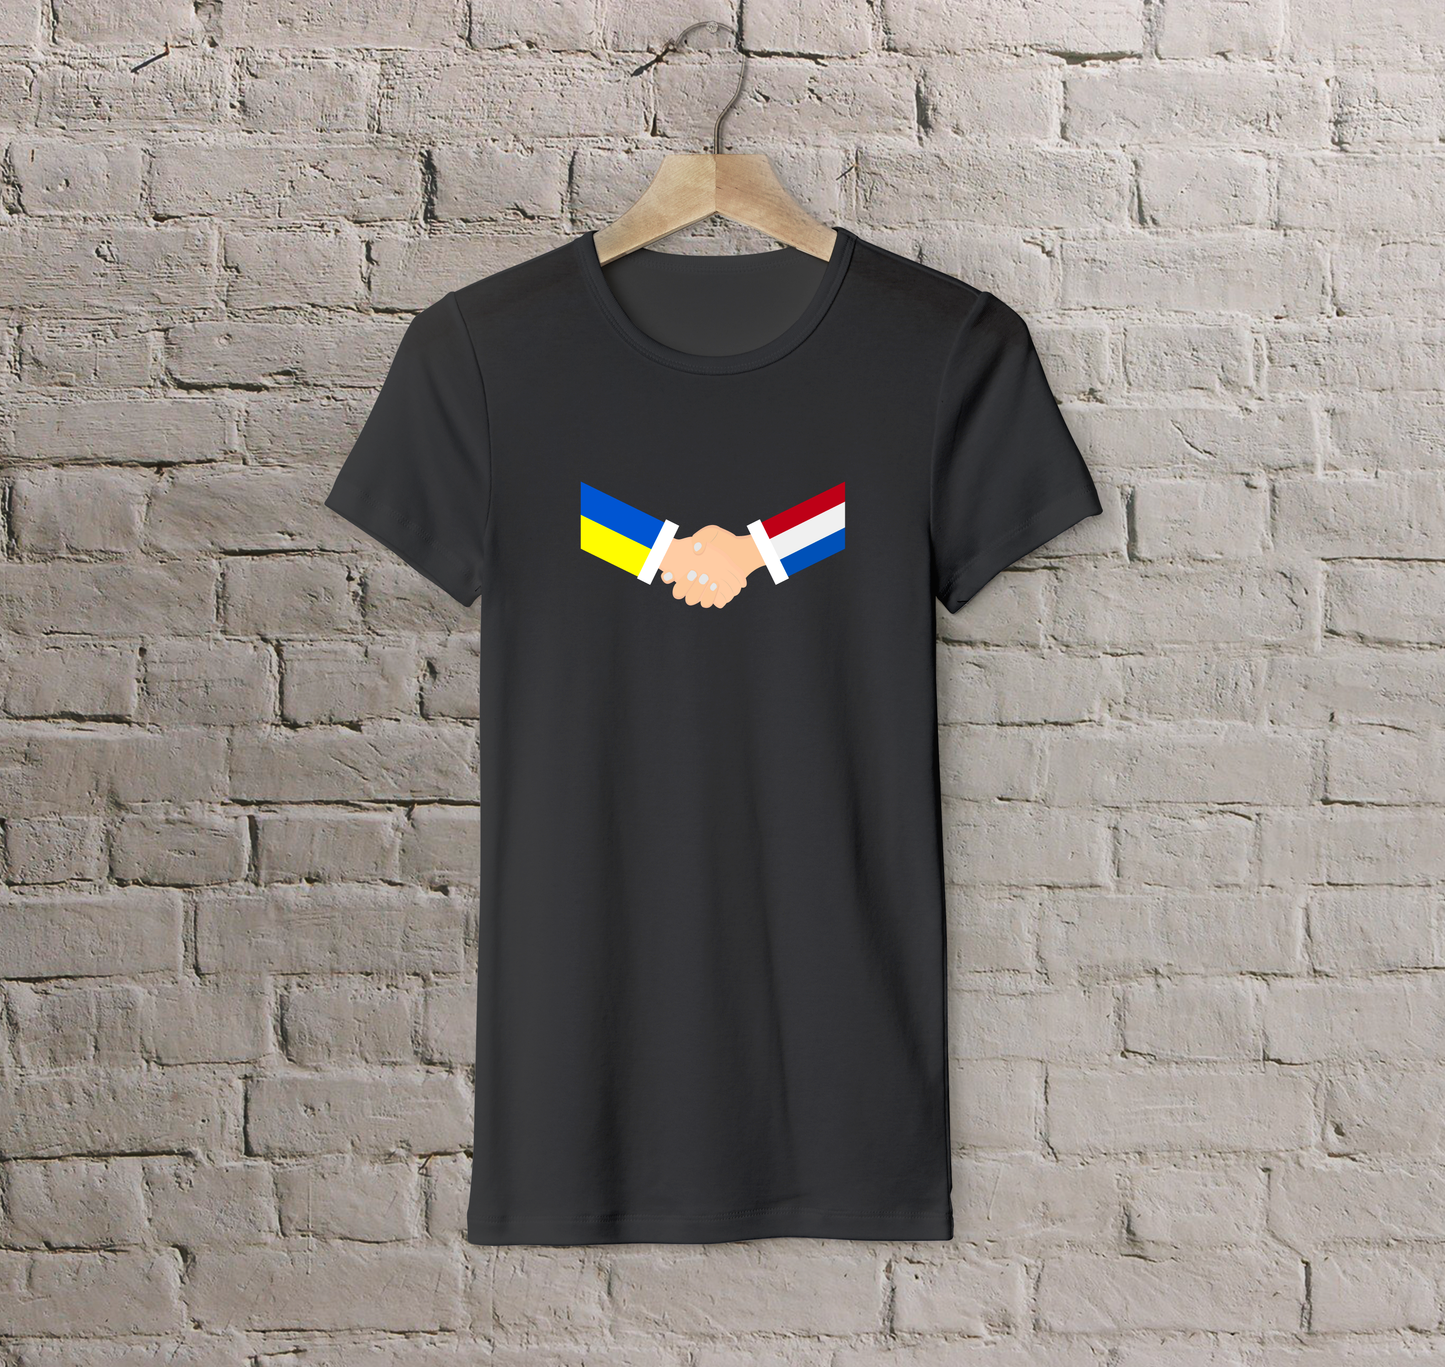 T-shirt Netherlands + Ukraine (handshake)